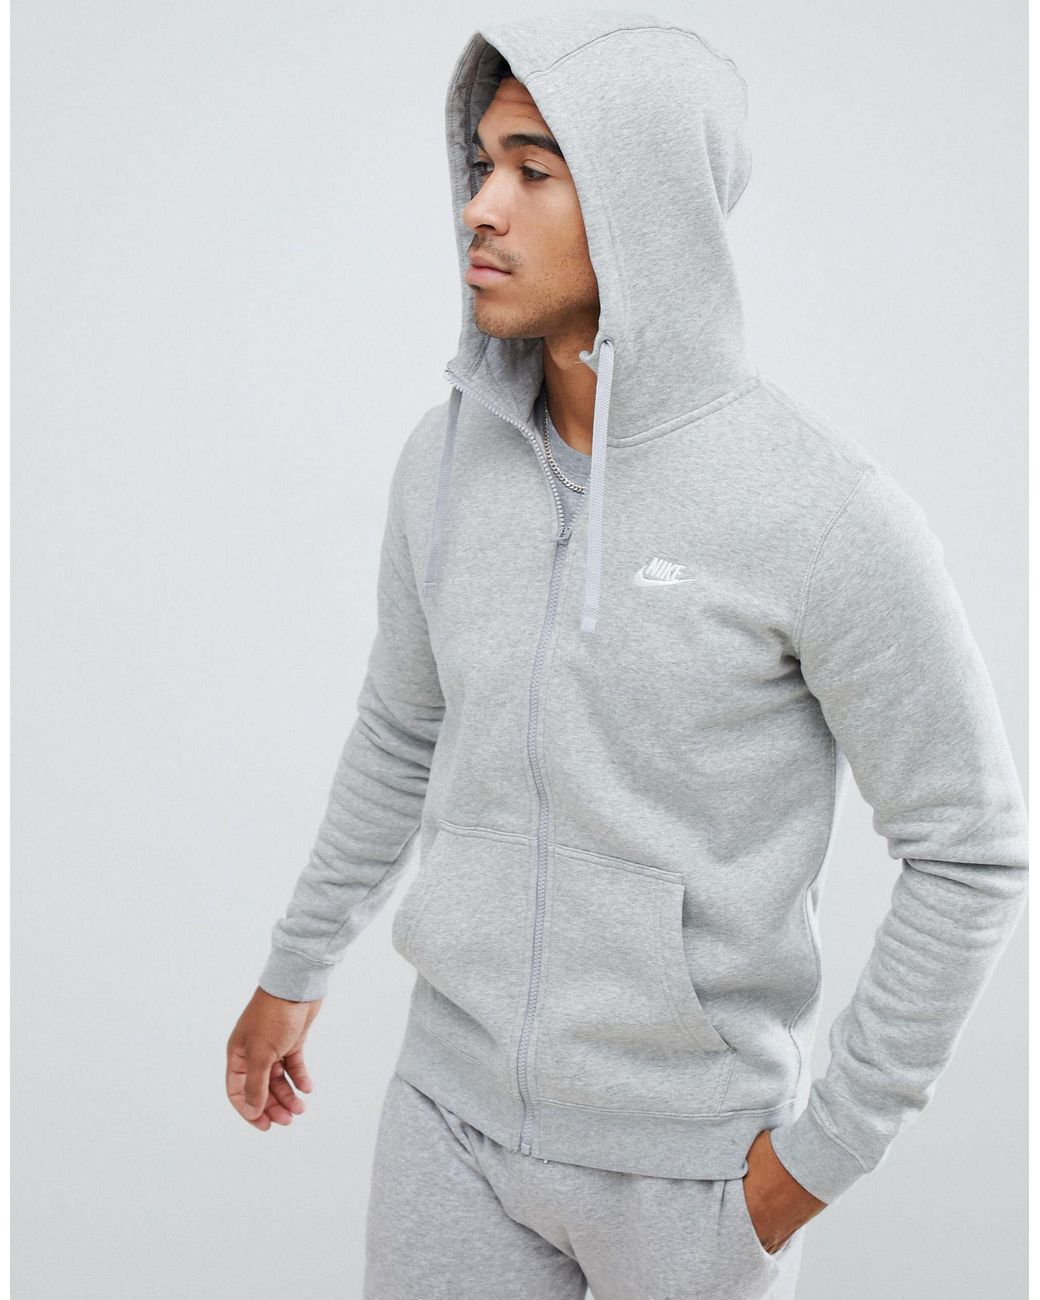 grey nike zip up hoodie